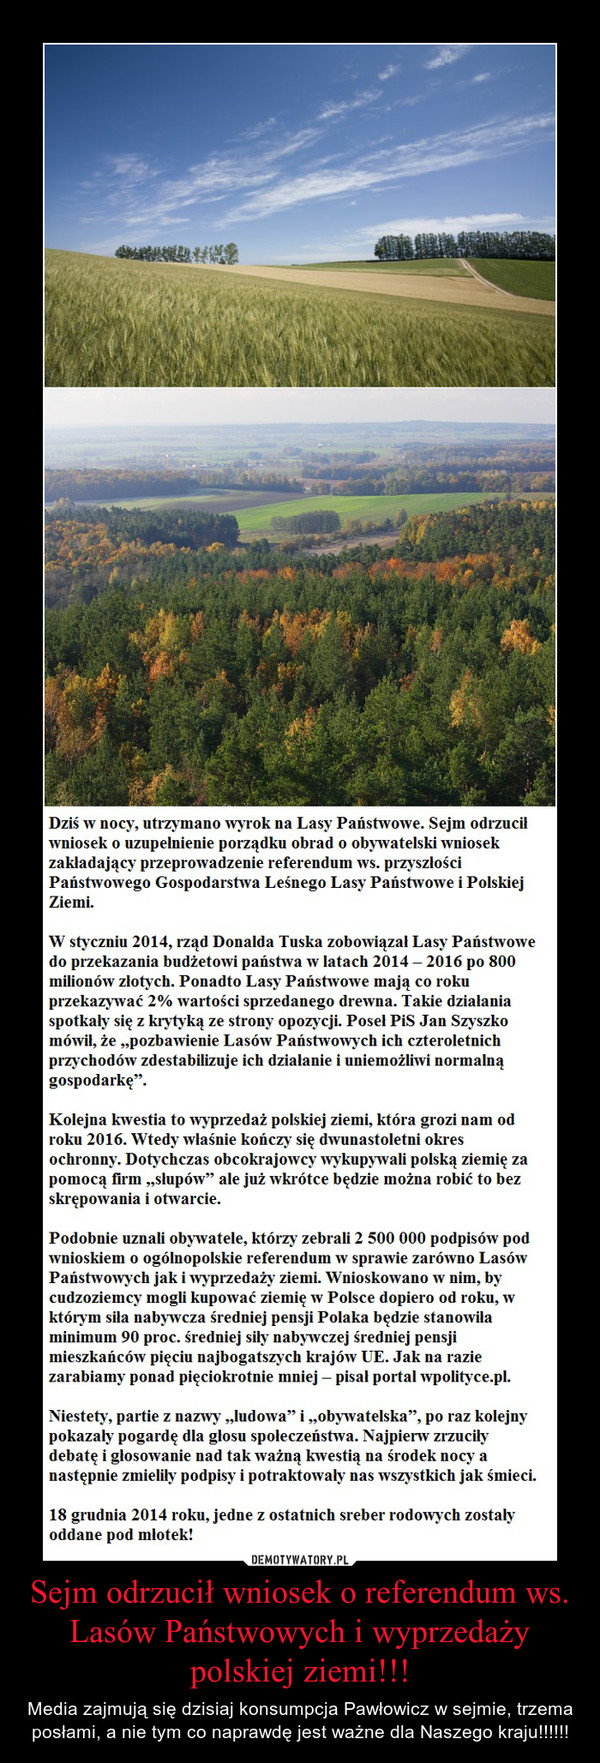 Sejm odrzucił wniosek o referendum ws. Lasów Państwowych i wyprzedaży polskiej ziemi!!!